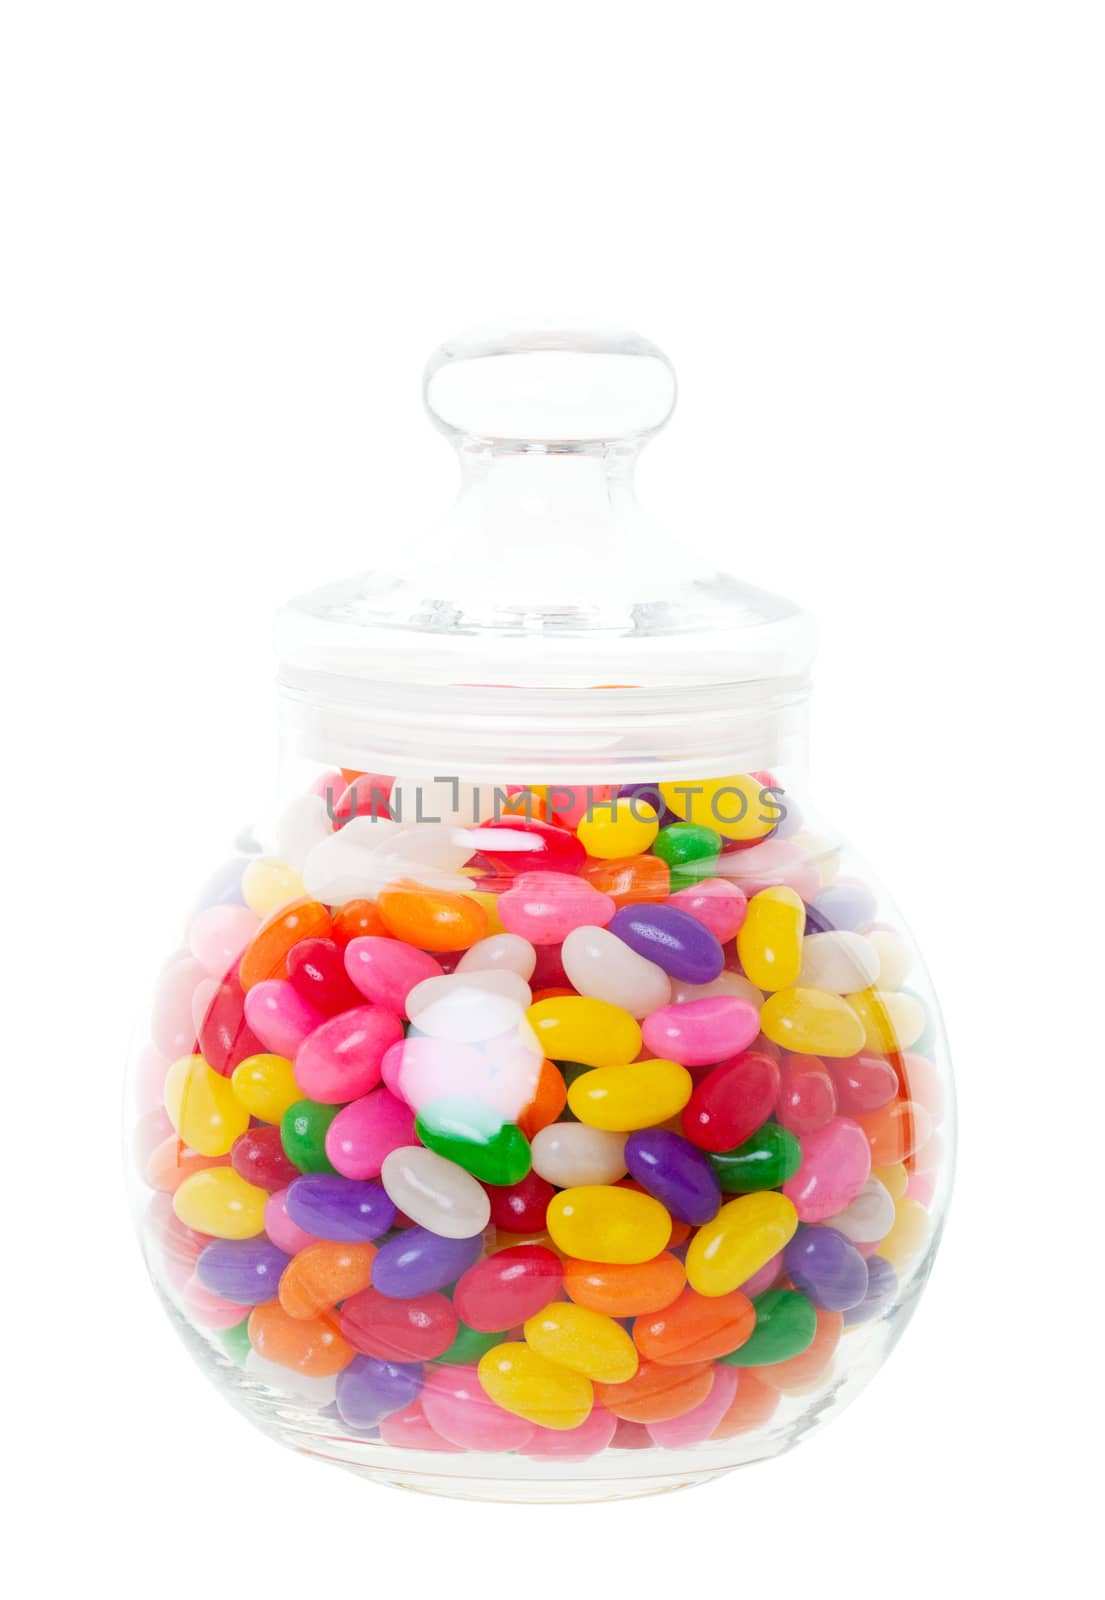 Jelly Bean Jar by songbird839